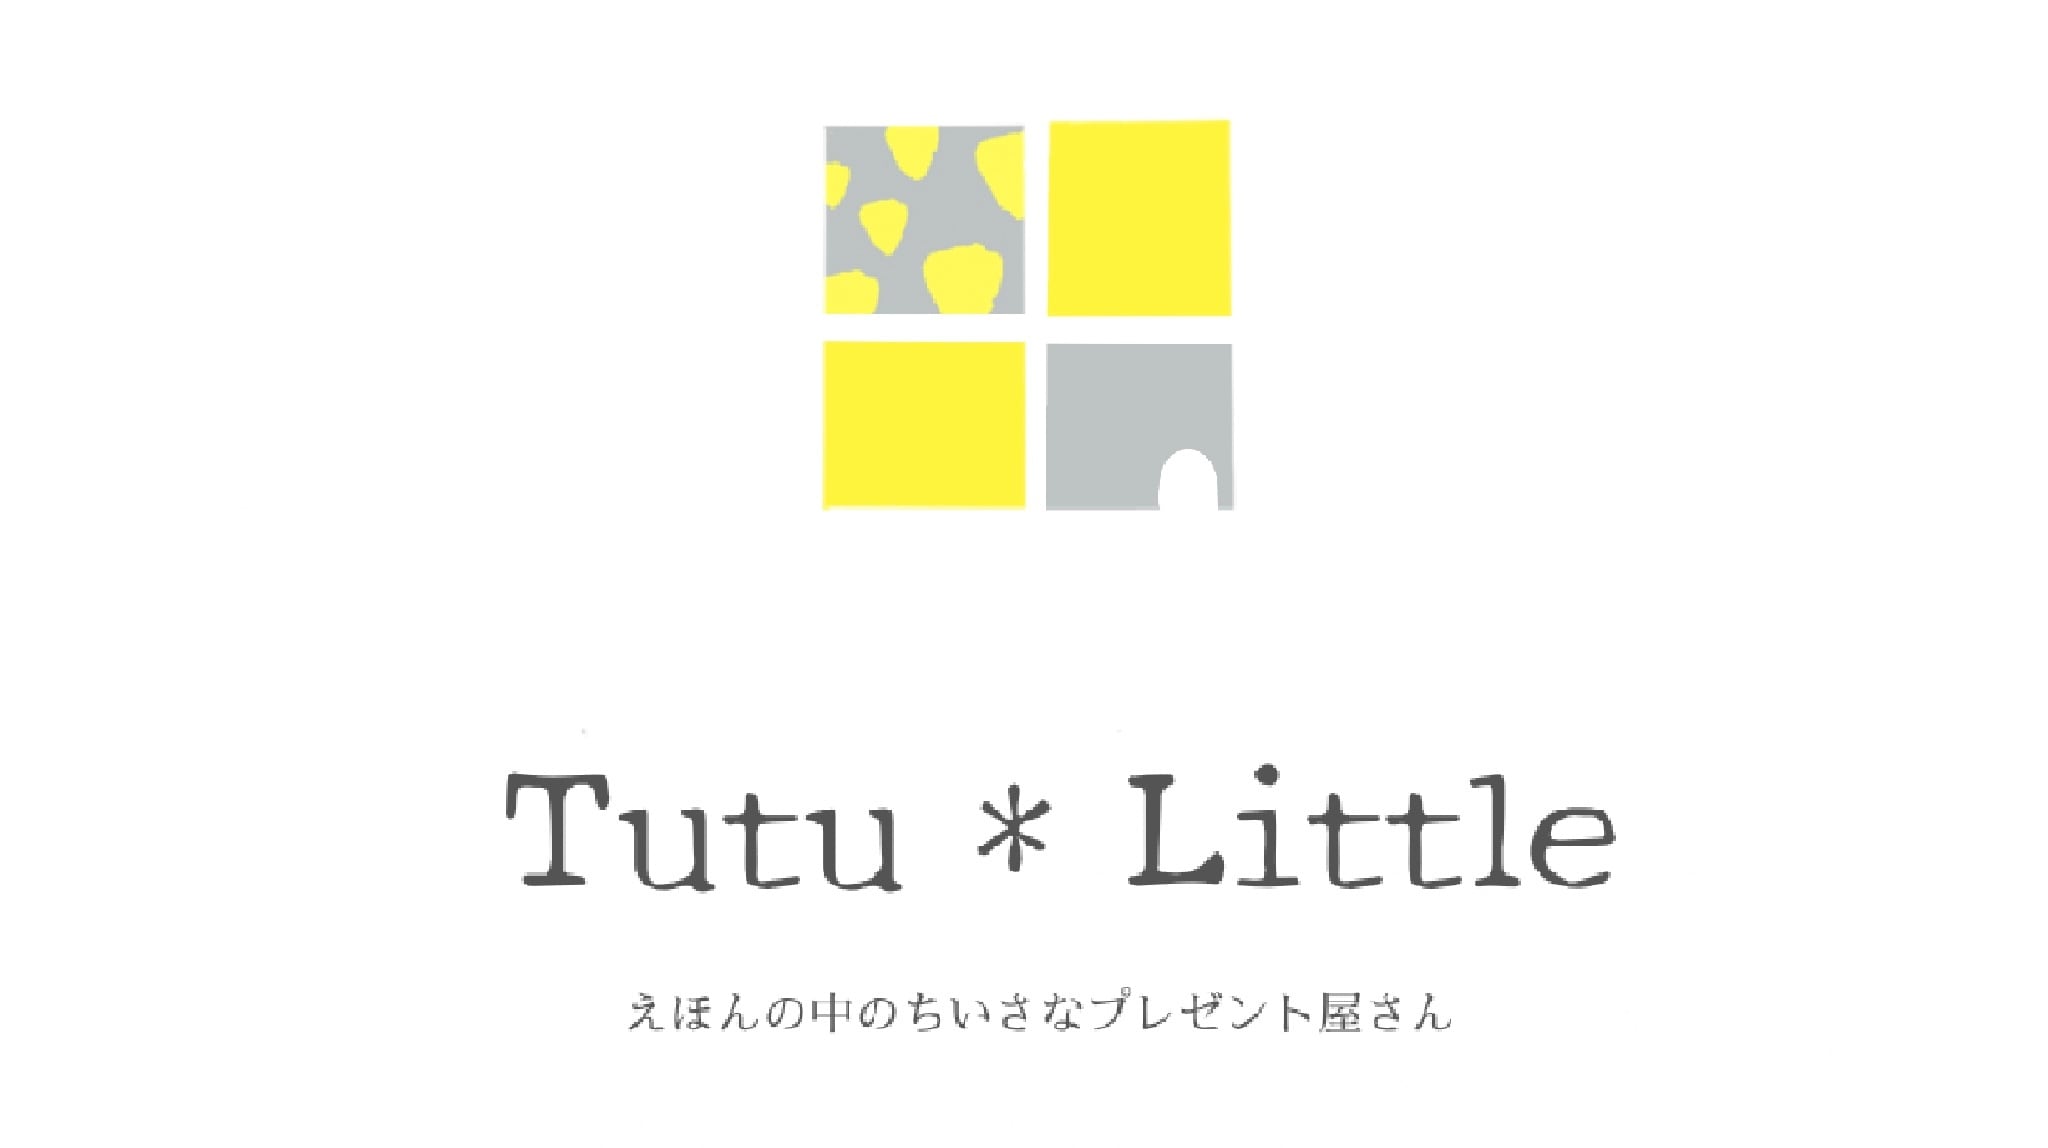 Tutu＊little